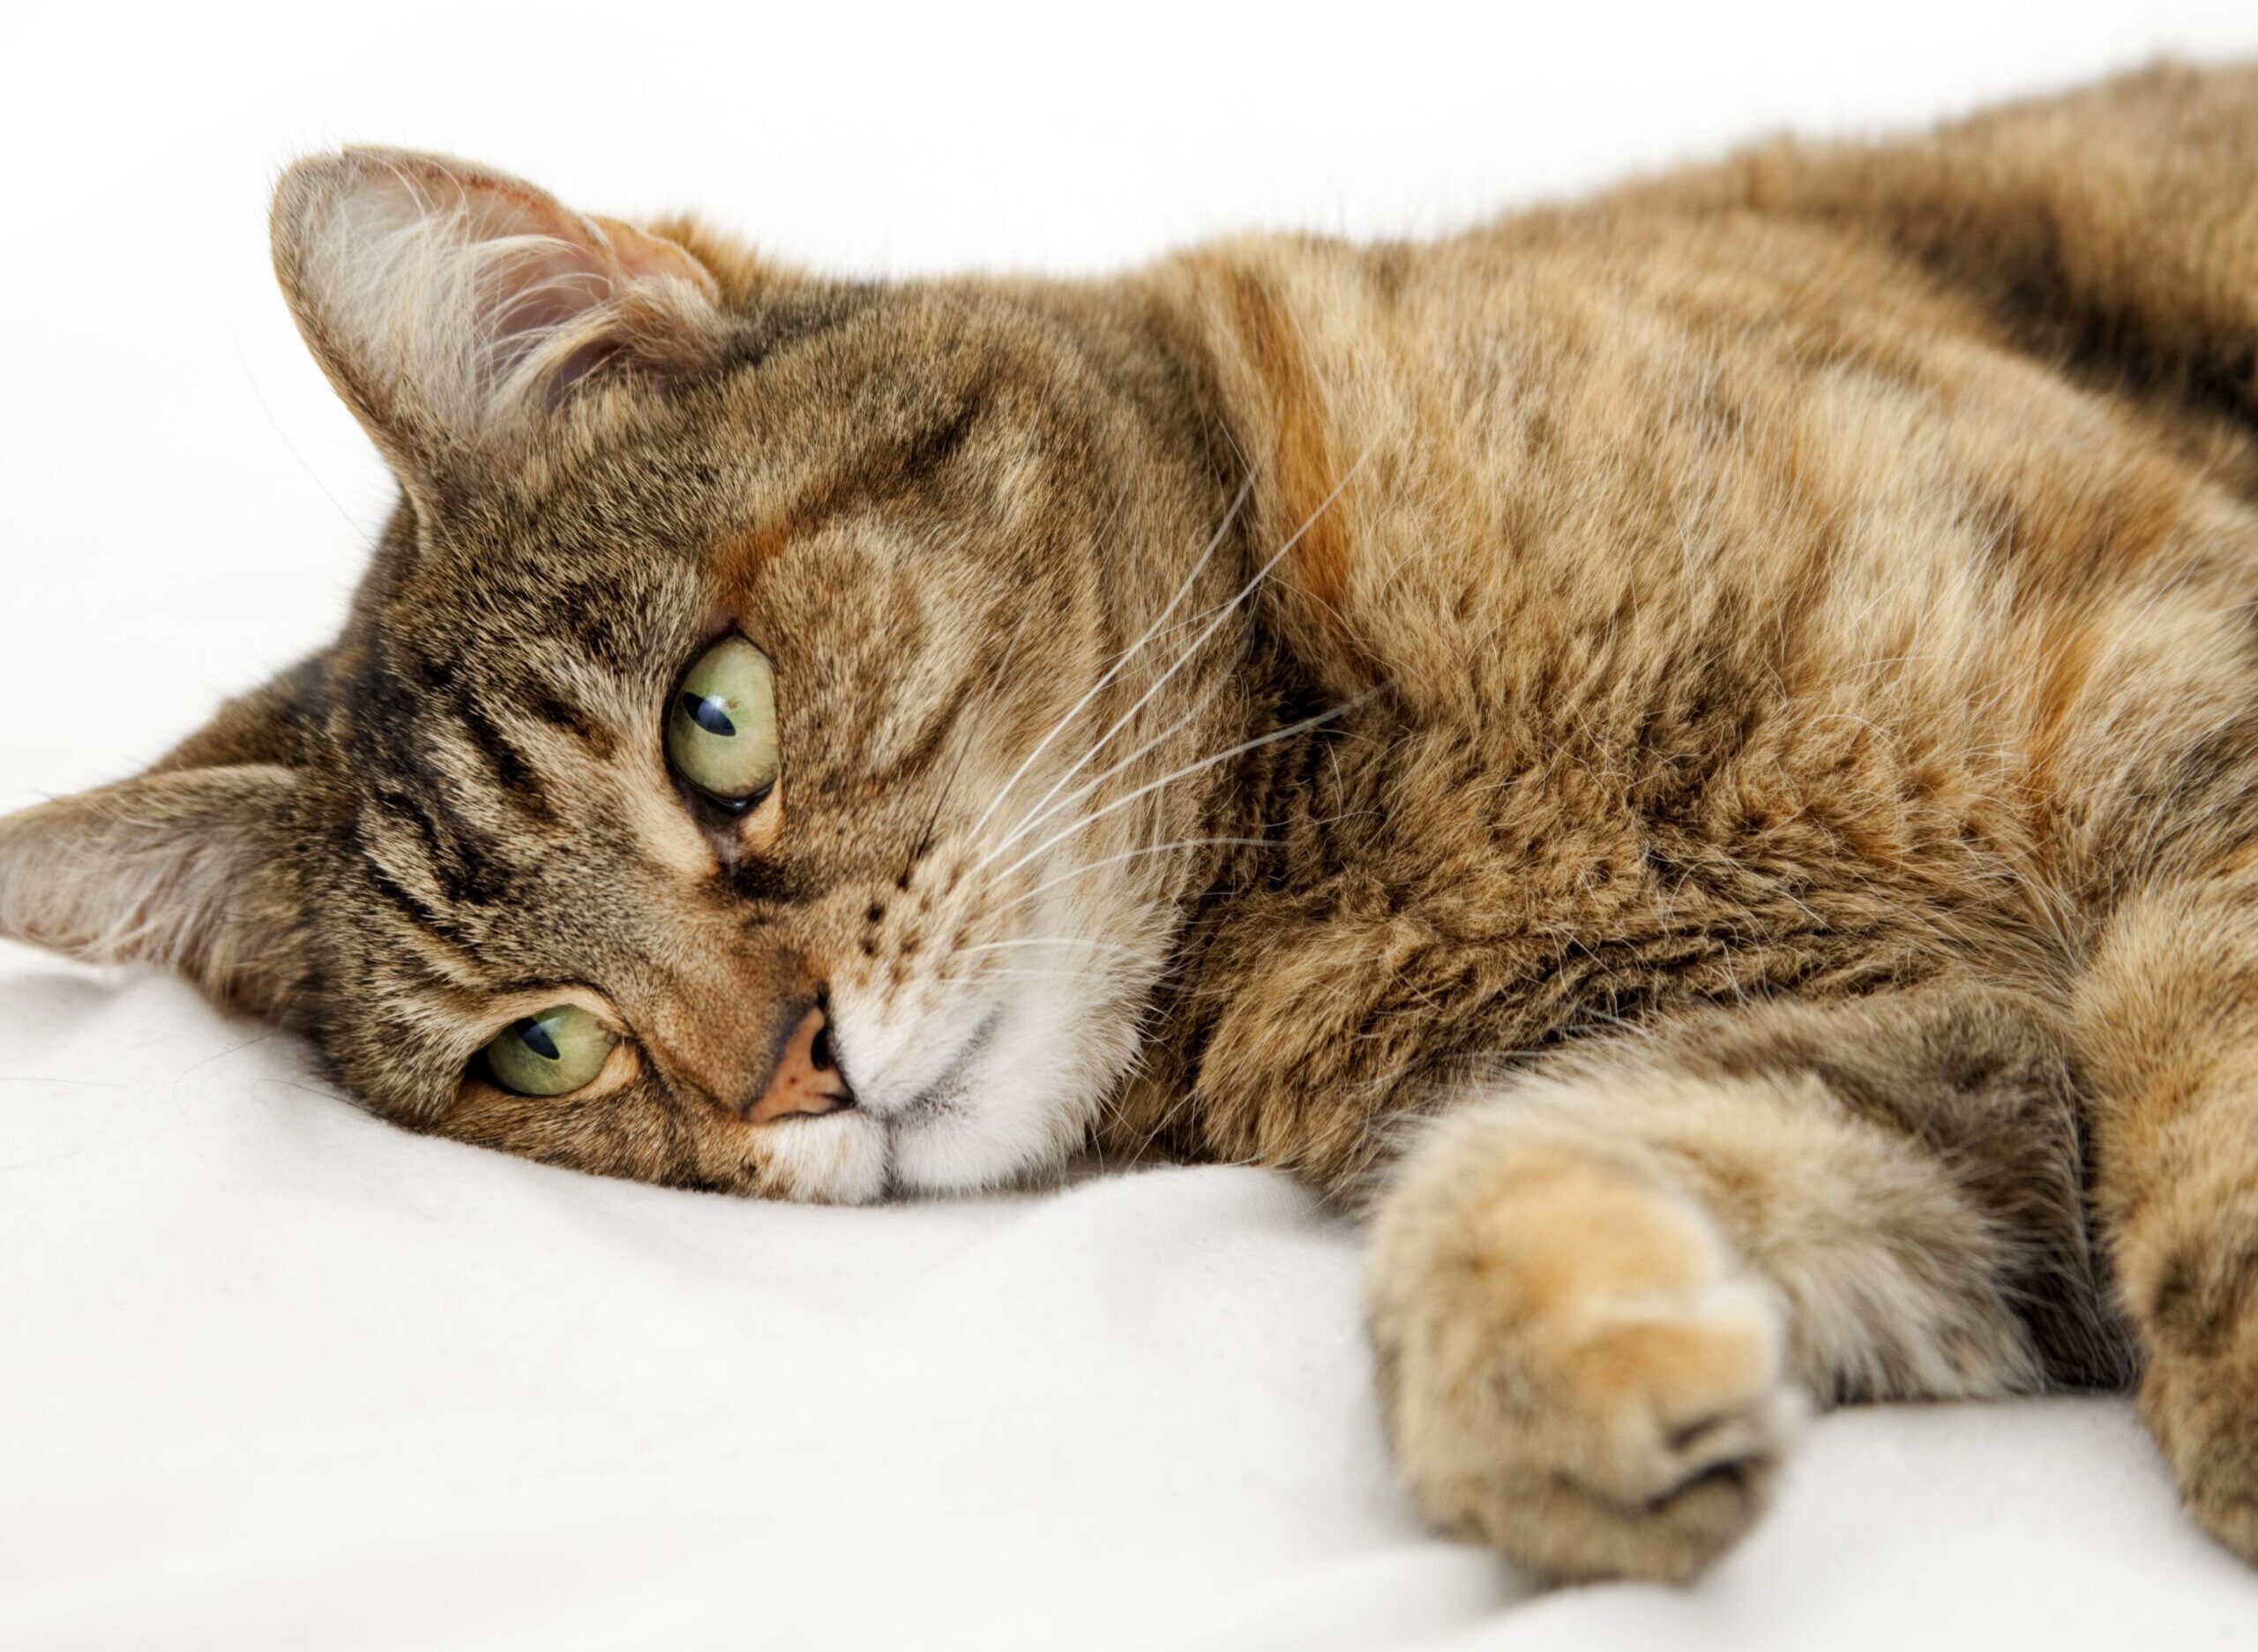 Cần xác định nguyên nhân gây ra bệnh tiêu chảy của mèo để có phương án chữa trị kịp thời